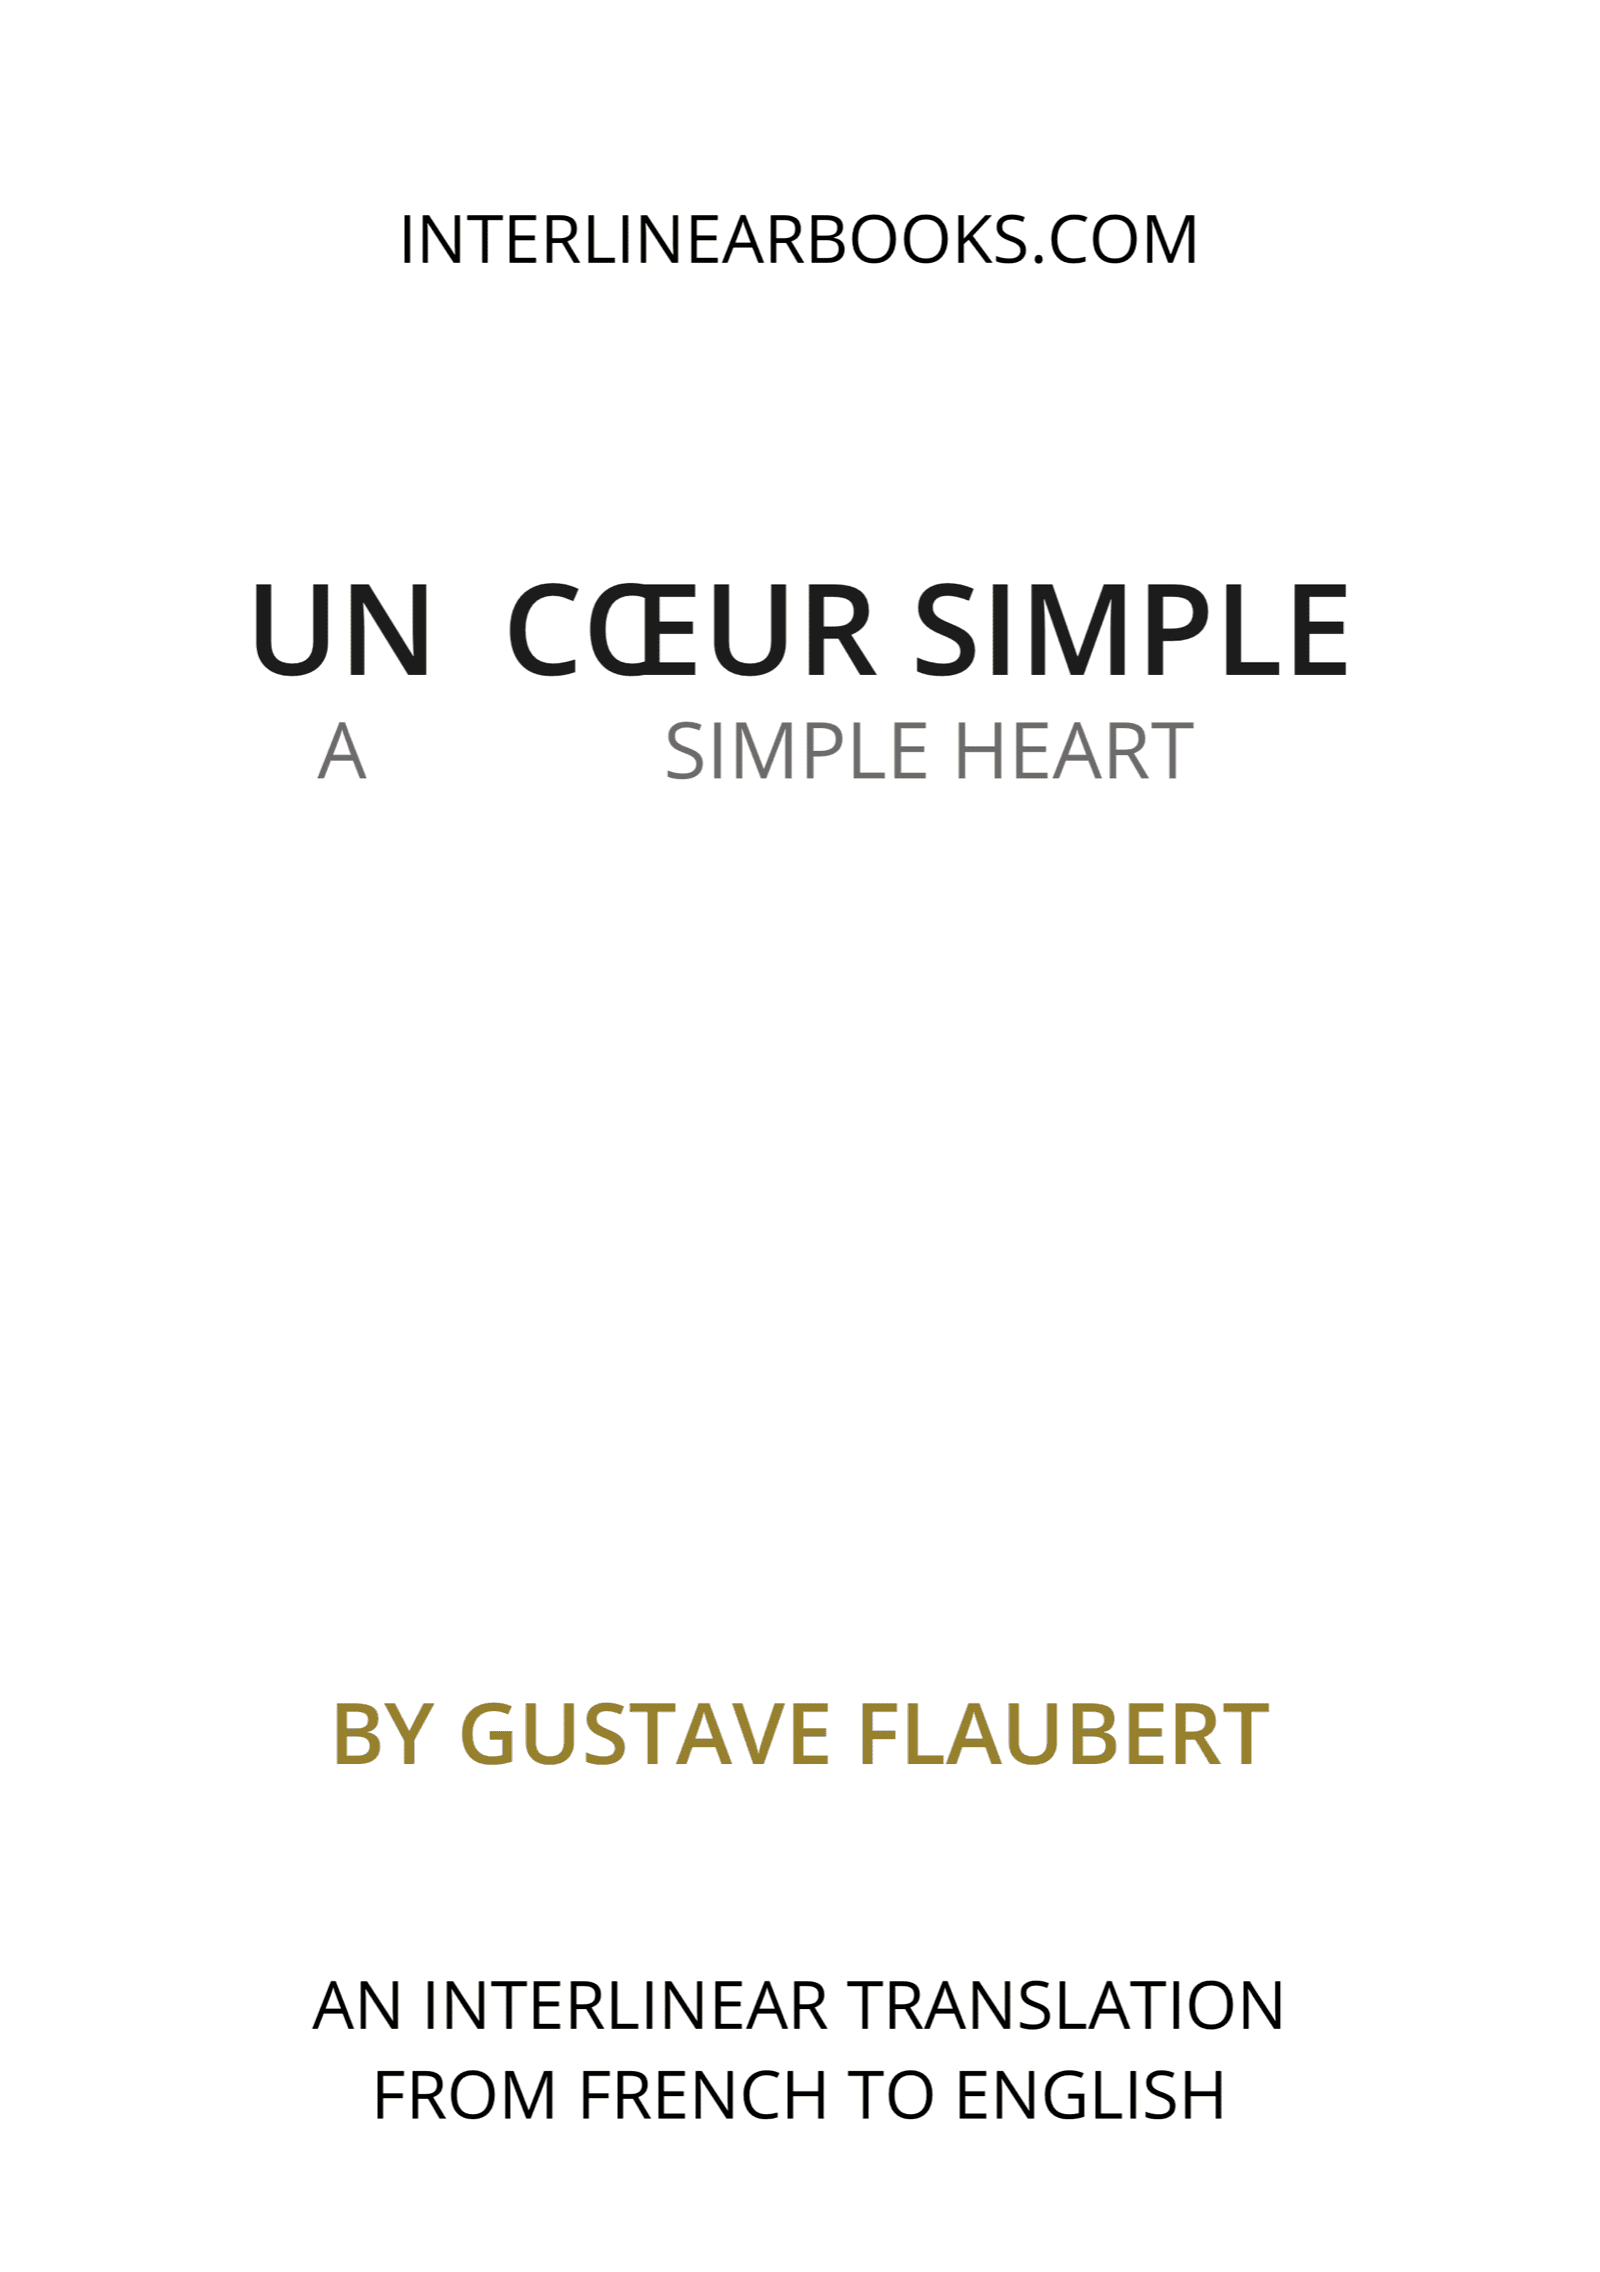 French book: Un cœur simple / A Simple Heart